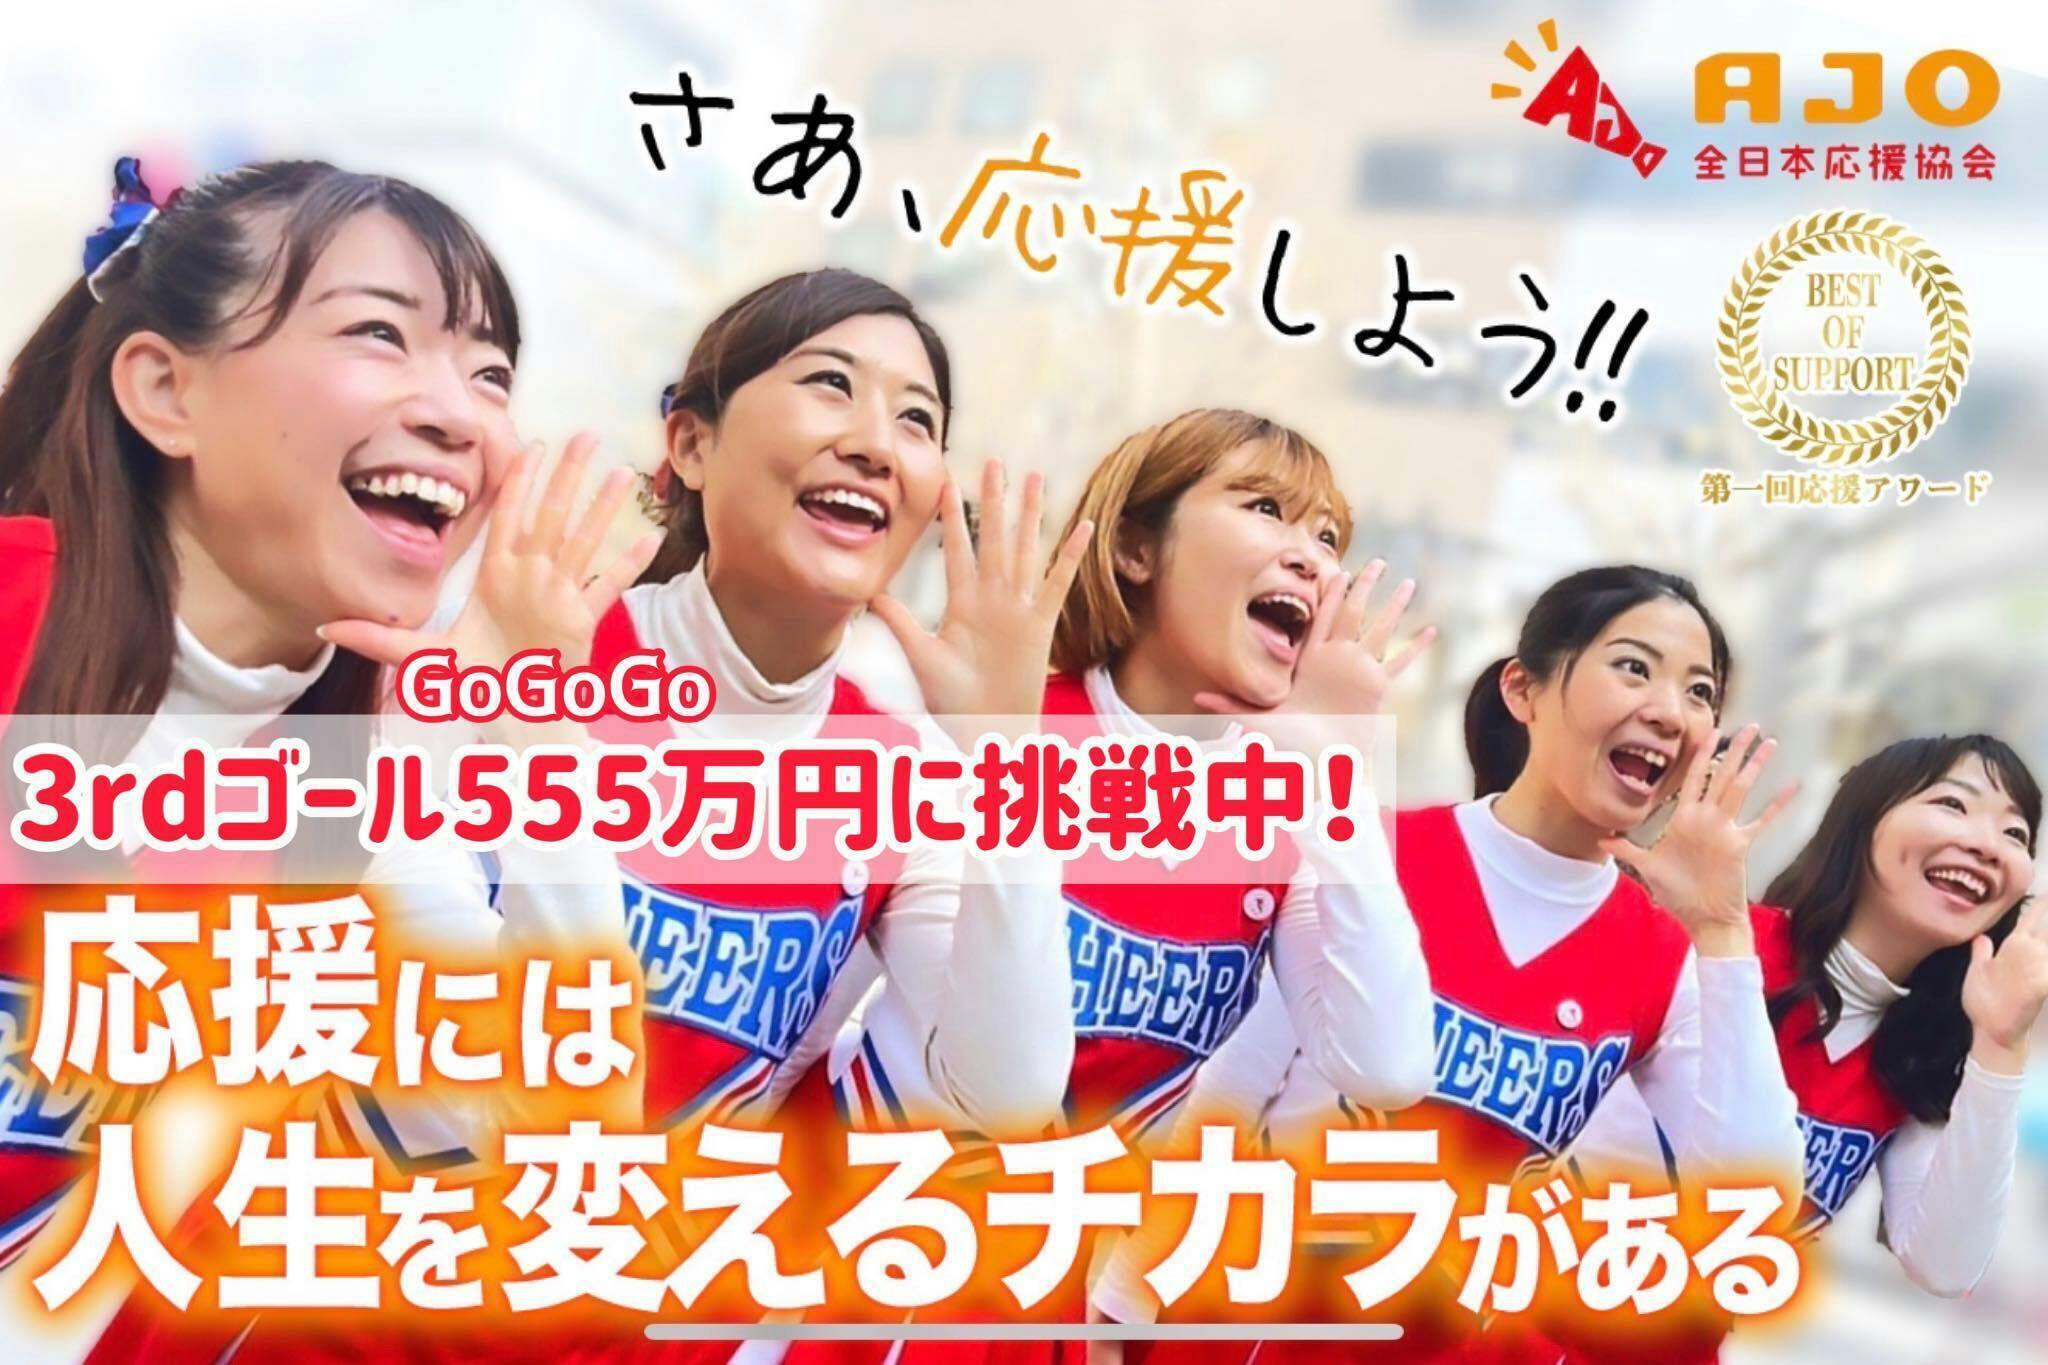 第一回応援アワード」開催。応援し合う社会づくりで日本を元気にしたい